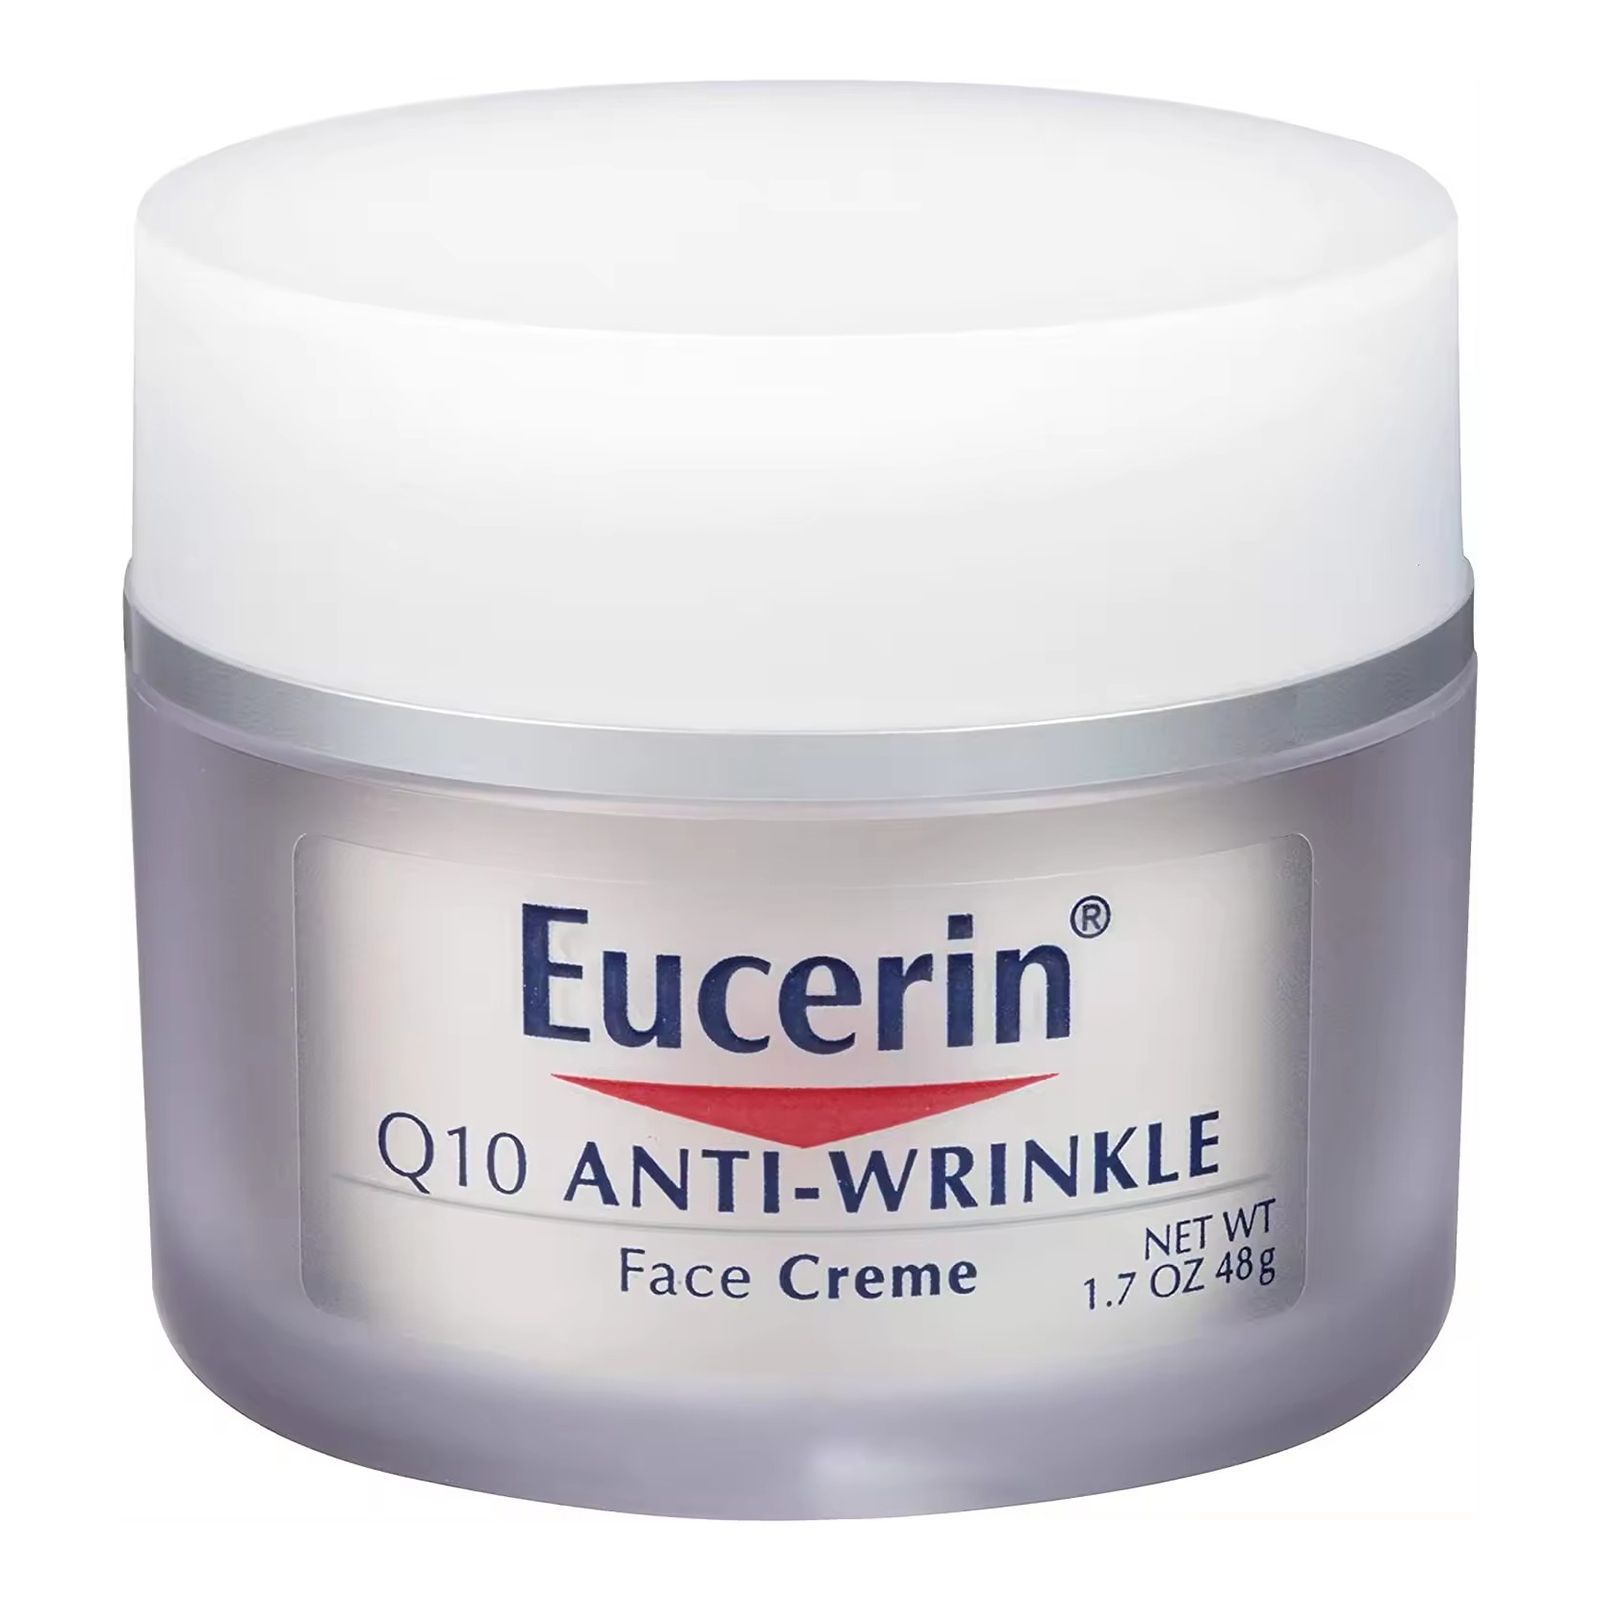 Увлажняющий крем. Eucerin q10 Anti-Wrinkle face Cream. Крем Eucerin q10 Anti-Wrinkle. Eucerin Aquaporin Active увлажняющий крем для чувствительной, сухой кожи лица. Eucerin, крем для лица против морщин с коэнзимом q10, 48 г (1,7 унции).